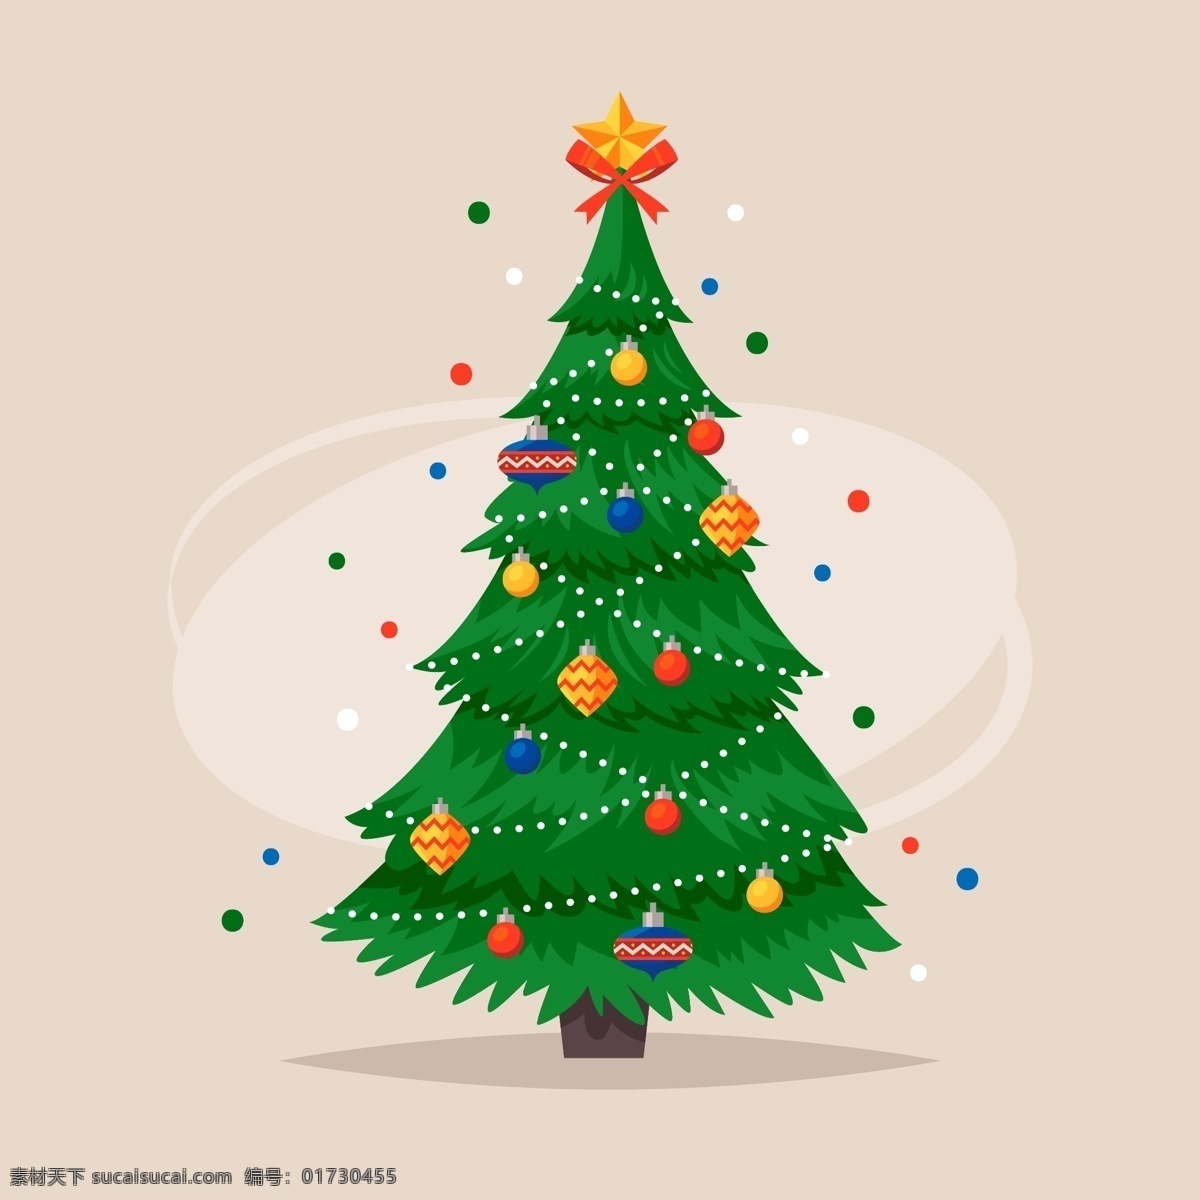 矢量 圣诞树 元素 背景 圣诞节 节日 狂欢 卡通 过节 庆祝 西方节日 假期 扁平